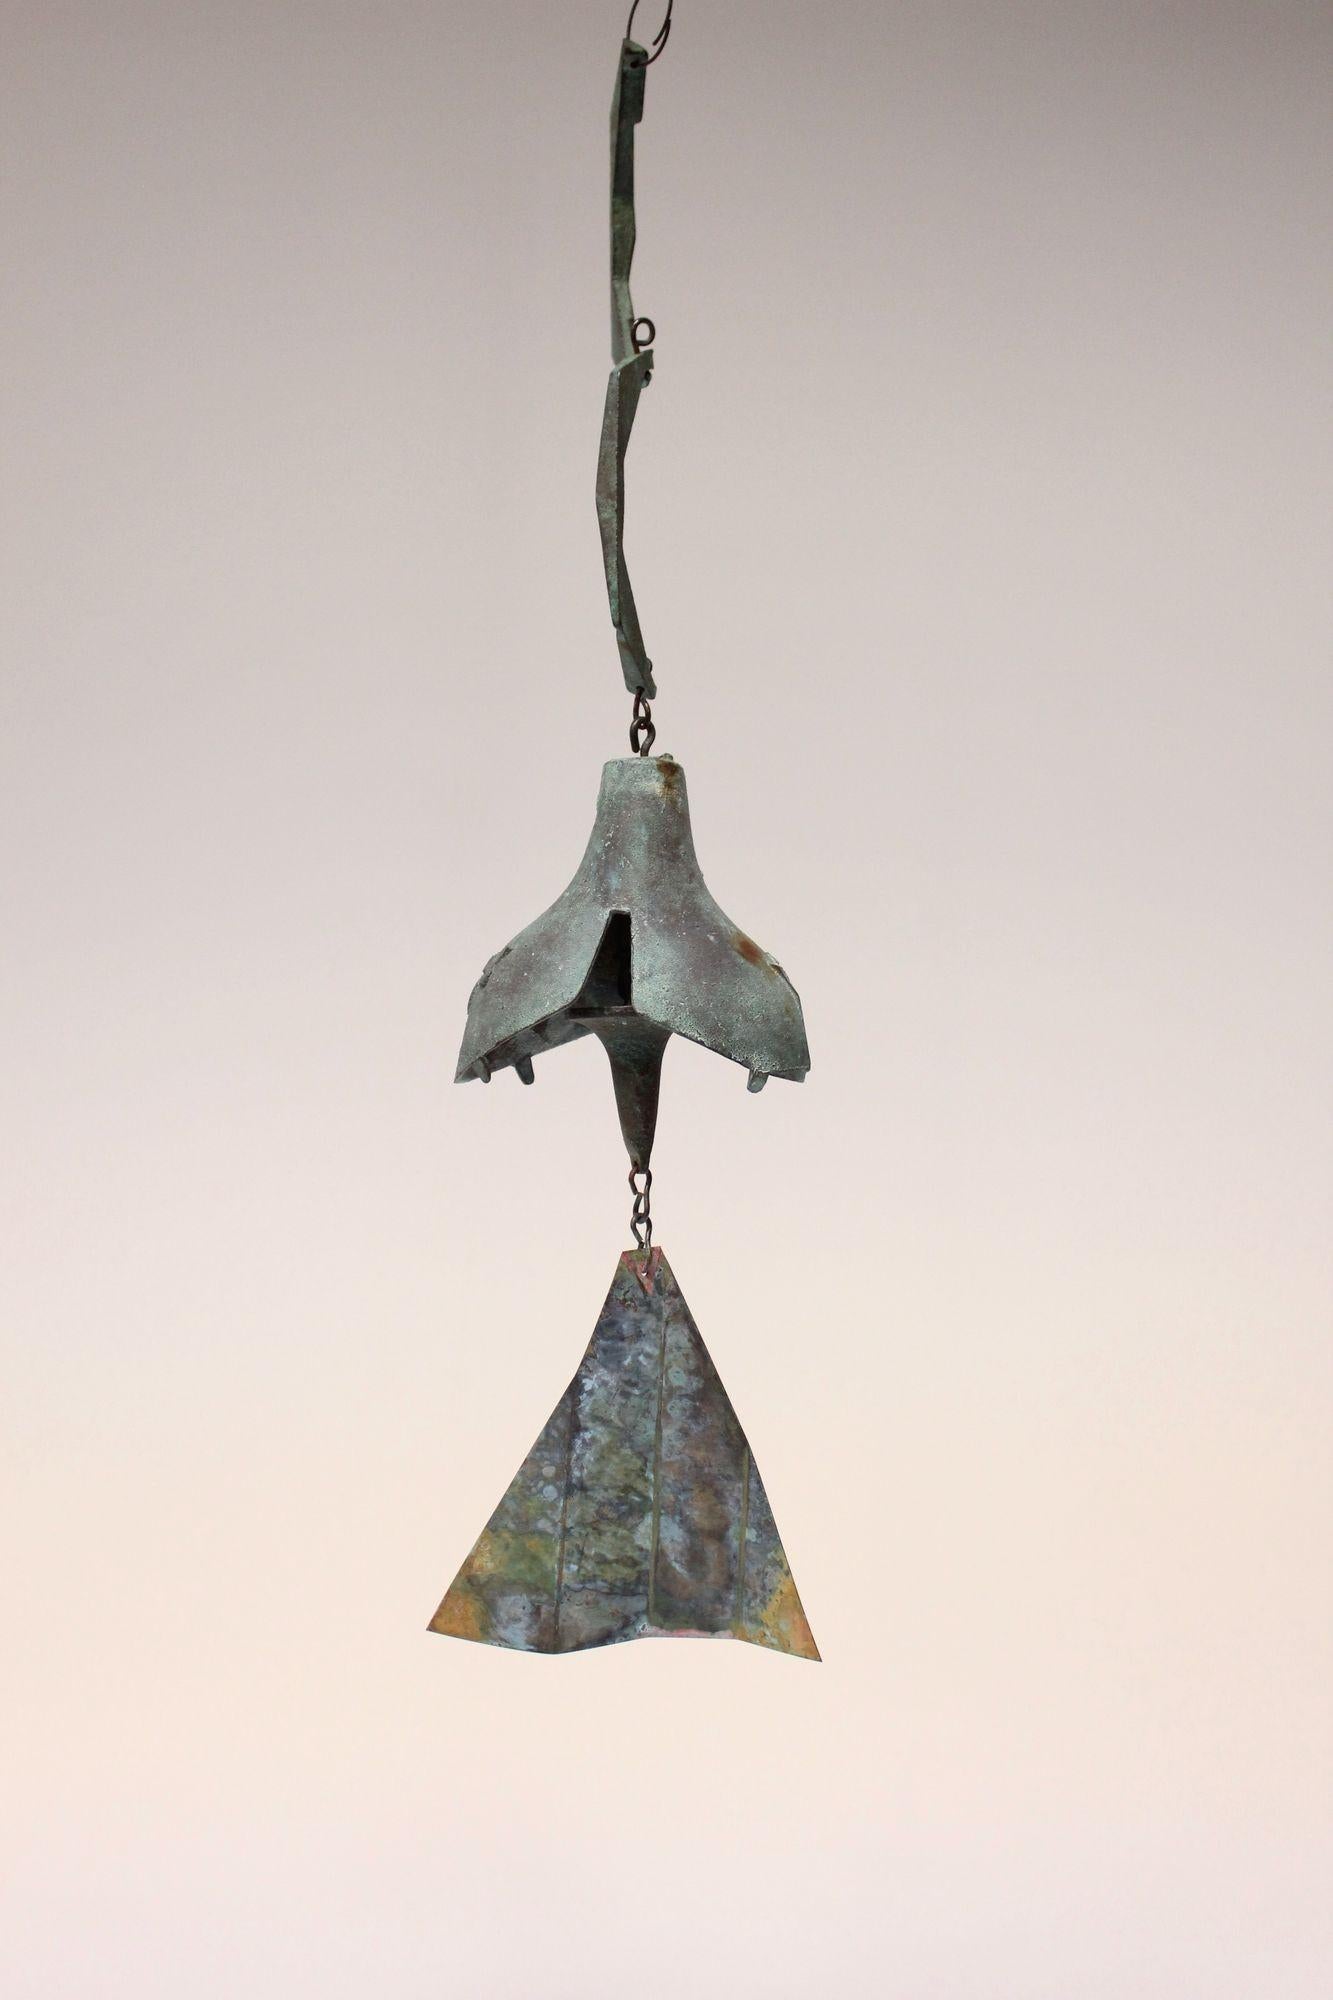 Windspiel/Glocke des Architekten Paolo Soleri für Arconsanti (die von ihm entworfene und 1970 erbaute Stadt in Arizona).
Gusselemente aus Bronze mit Grünspanpatina und mehrfarbig pigmentierter Flosse. Frühe Produktion mit attraktiven Farben